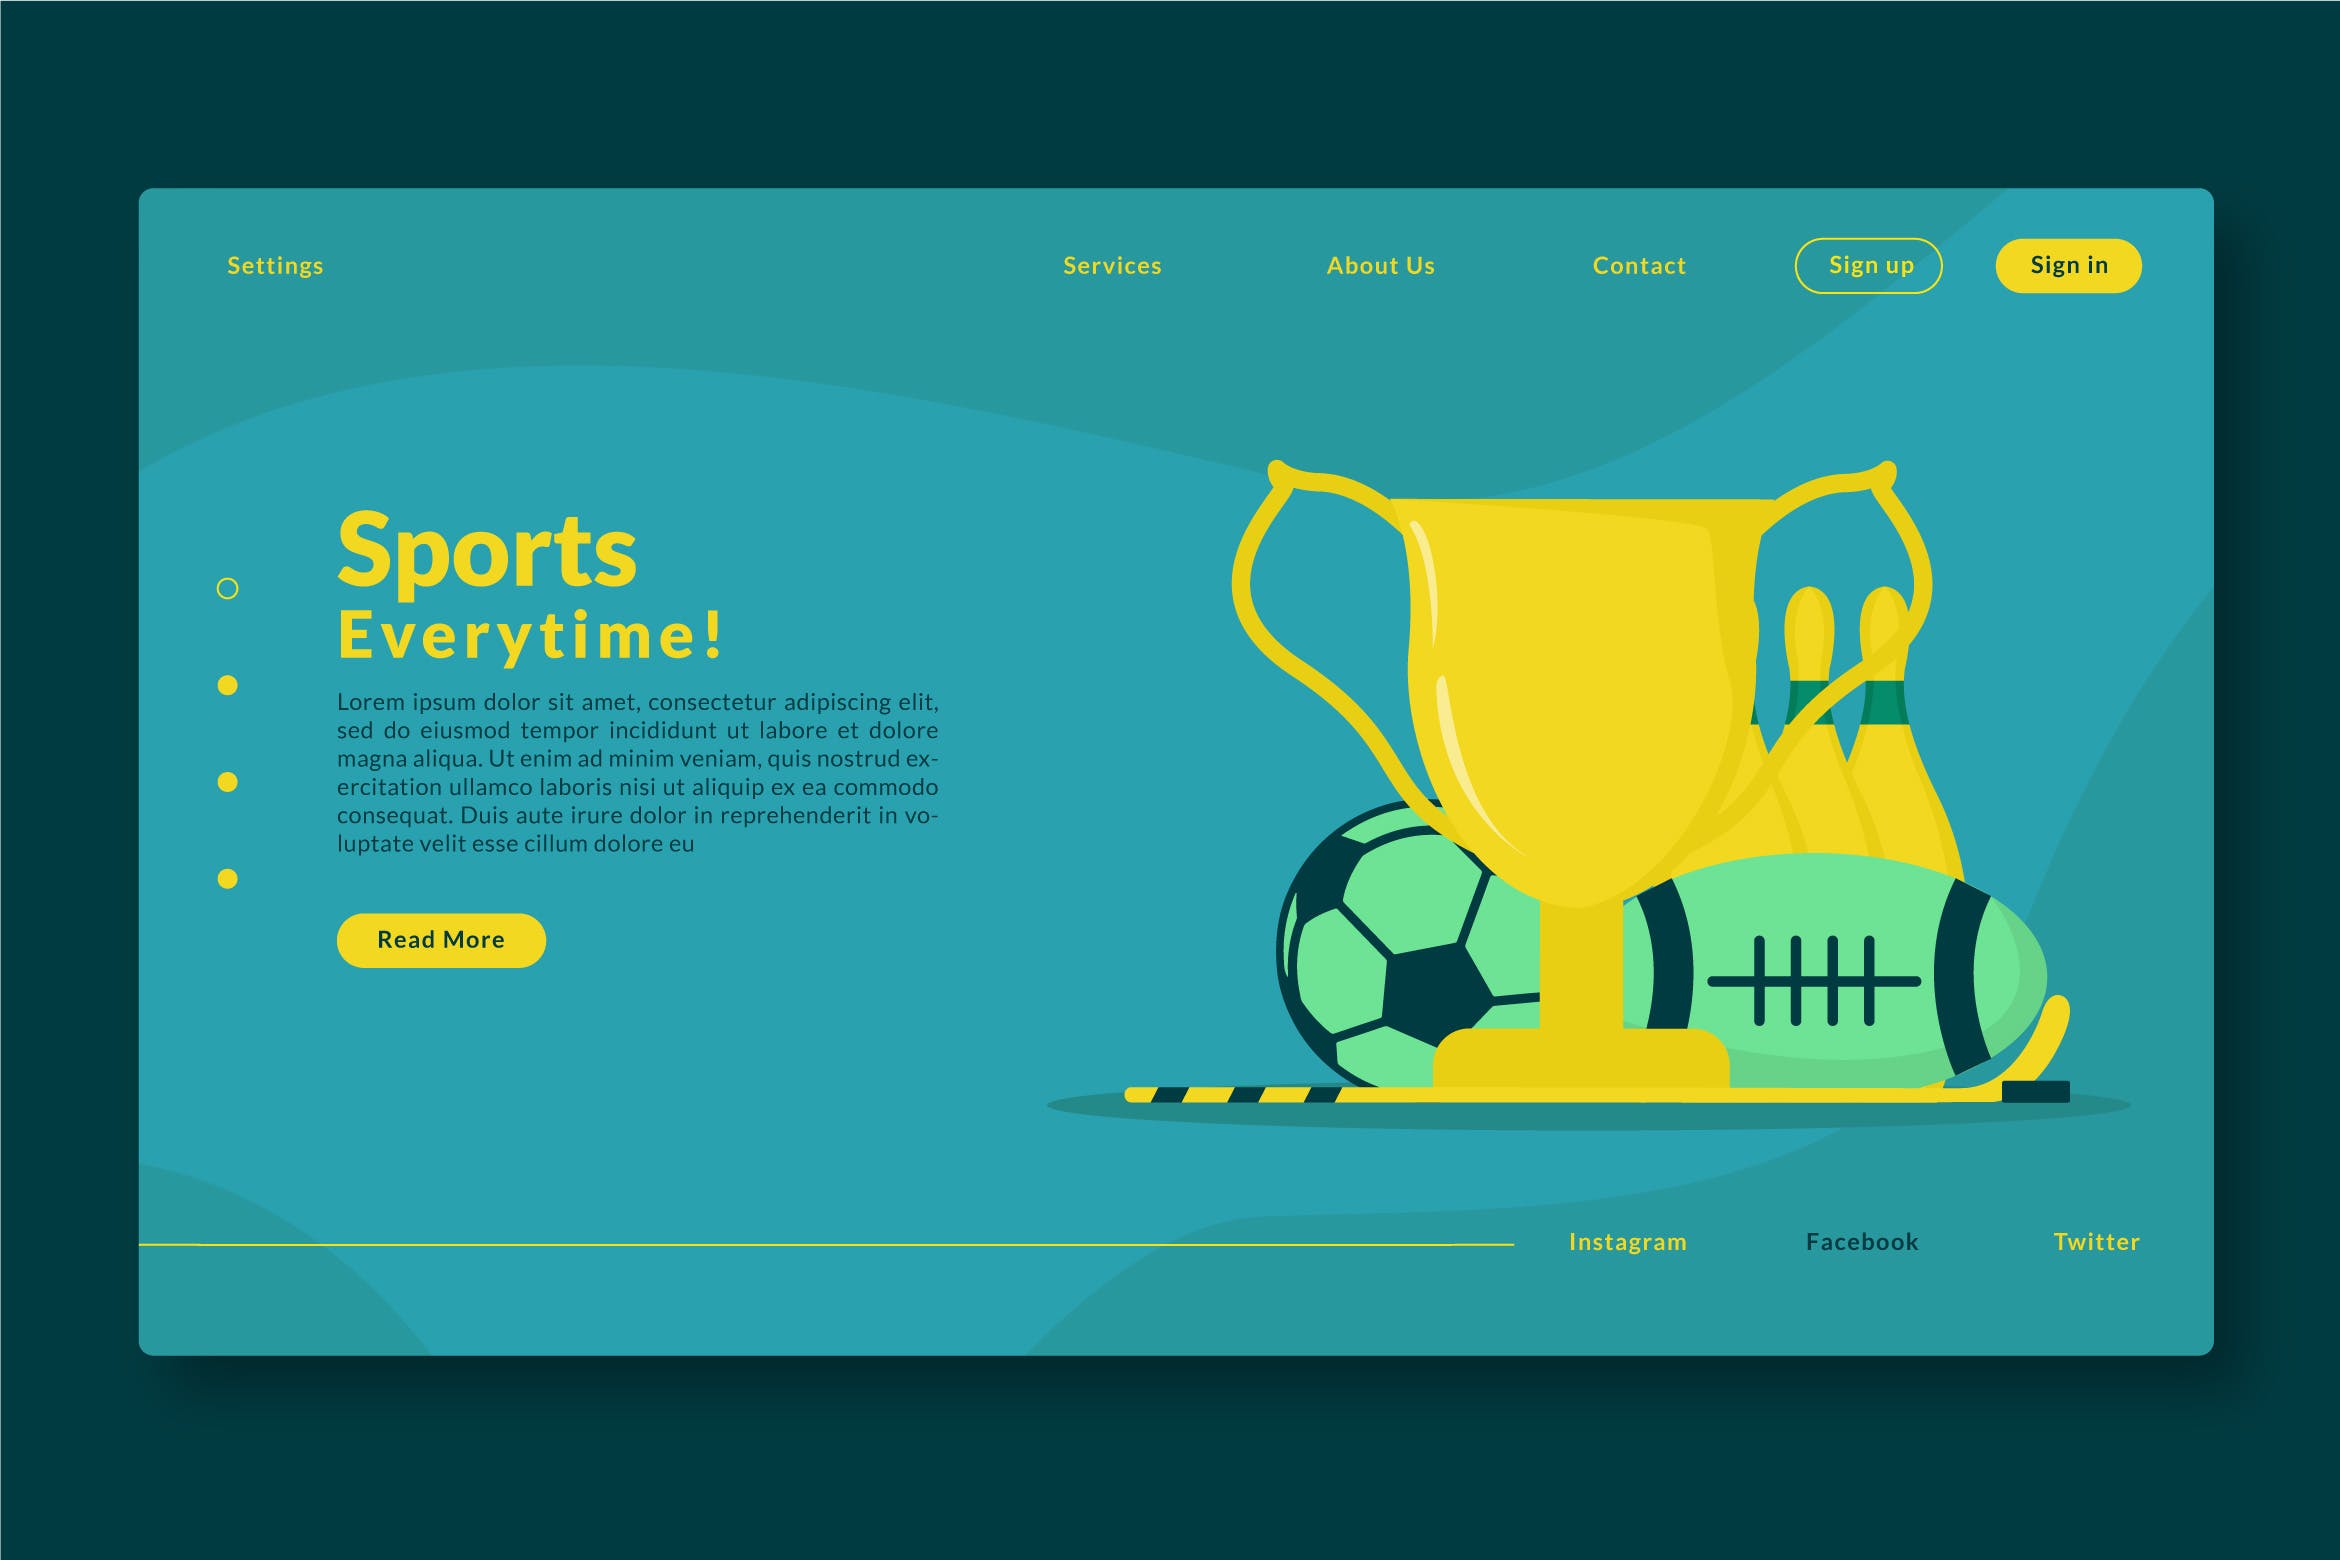 体育运动主题网站设计矢量插画素材 Sports Everytime – Web Header & Landing Page GR